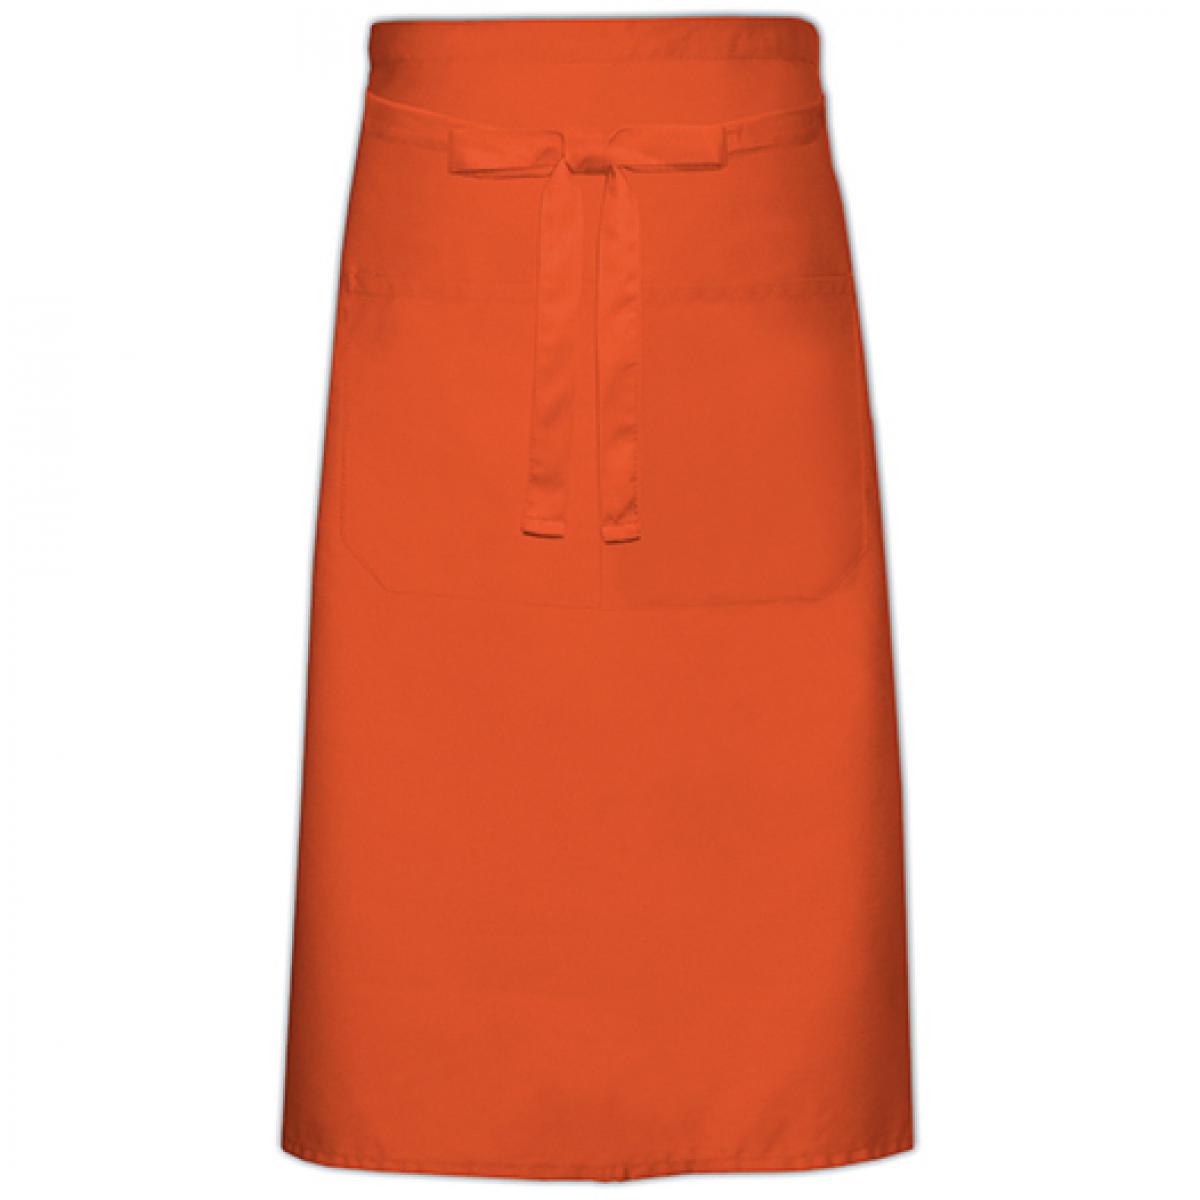 Hersteller: Link Kitchen Wear Herstellernummer: KS70100Z Artikelbezeichnung: Cook`s Apron with Pocket - 100 x 70 cm - Waschbar bis 60 °C Farbe: Orange